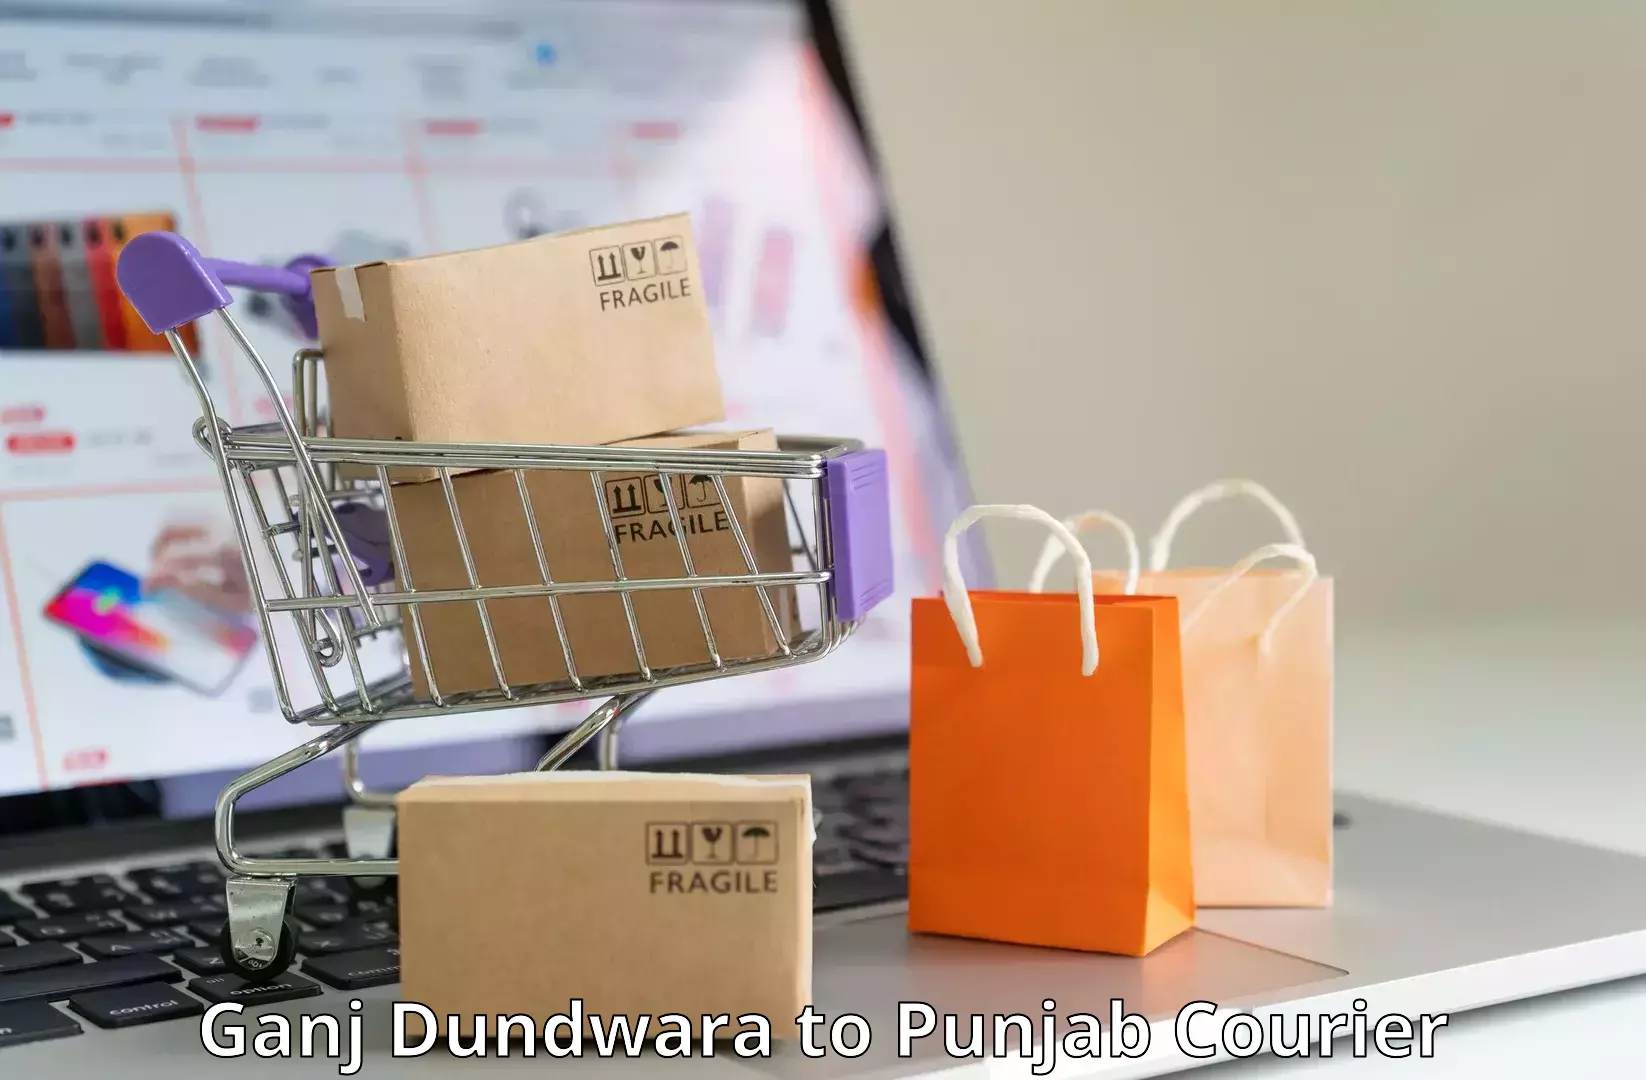 Dynamic courier operations Ganj Dundwara to Zirakpur